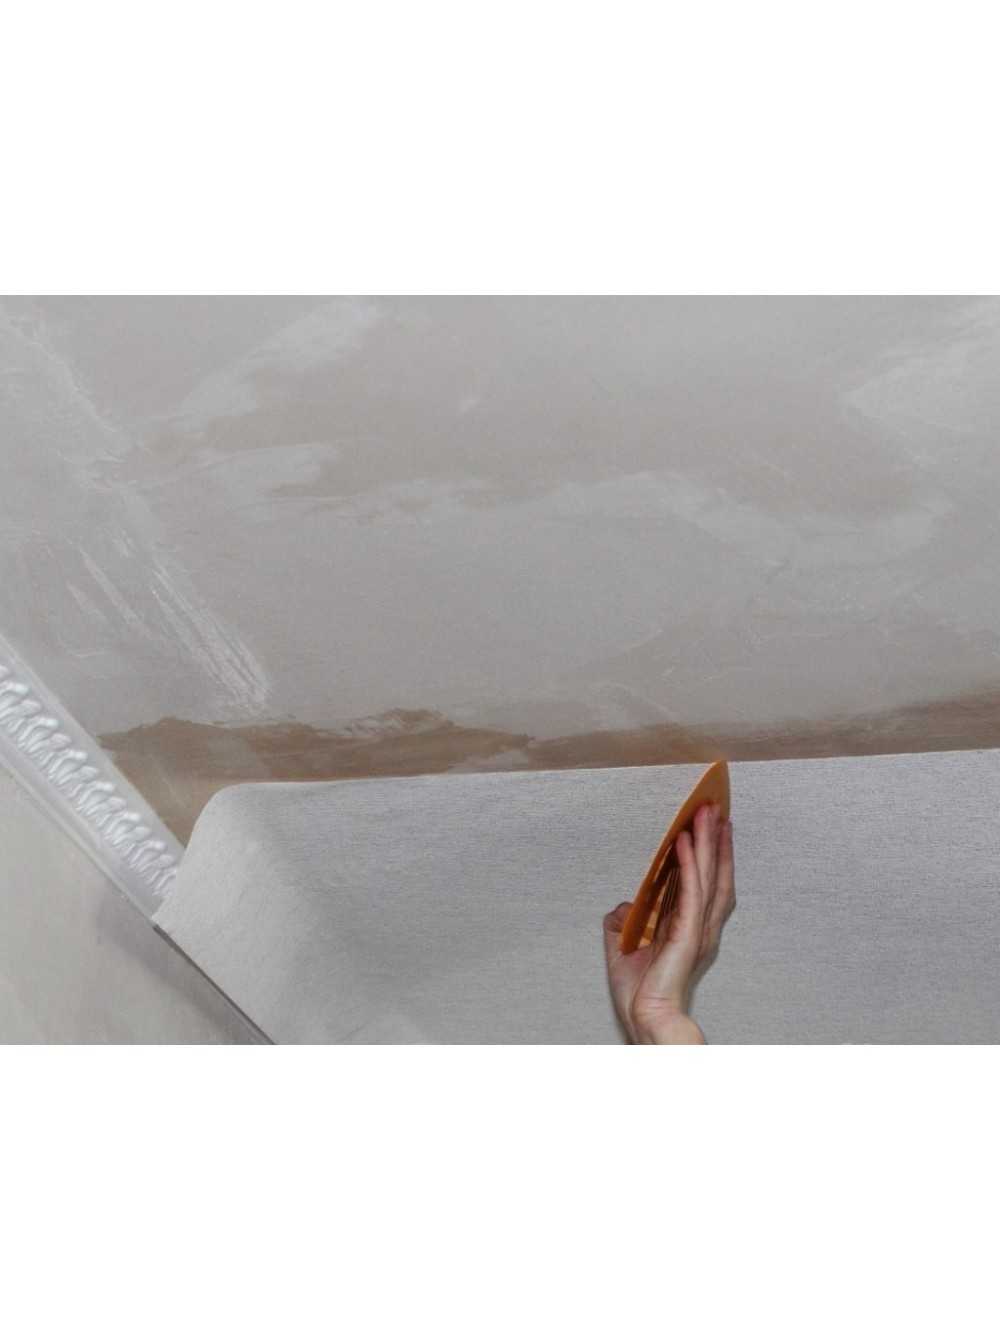 В этой статье мы поговорим о флизелиновых обоях на потолок под покраску Вы узнаете, какой клеевой состав использовать, что из инструментов и материалов применять, а в конце поговорим о том, как приклеивать полотна обоев